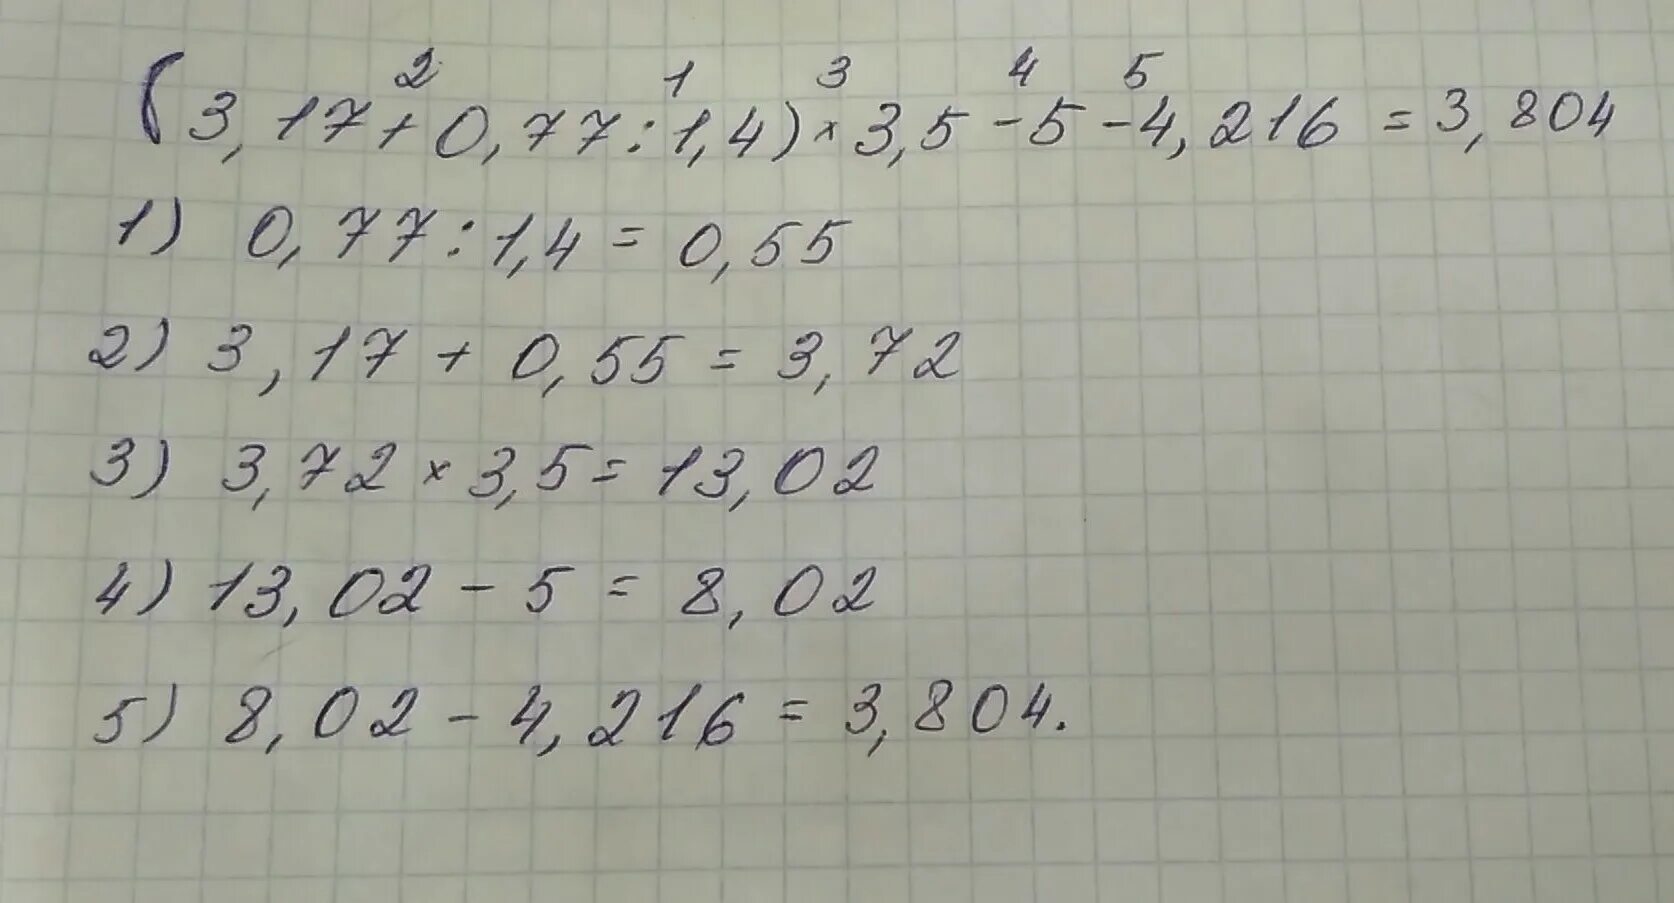 17 четвертых. (3,17+0,77:1,4)*3,5-4,216=Решение. Найдите значение выражения 3 17 0 77 1 4 3 5 4 216. (3,17+0,77:1,4)×3,5-4216 решение. (3,17+0,17:1,4)•3,5-4,216.